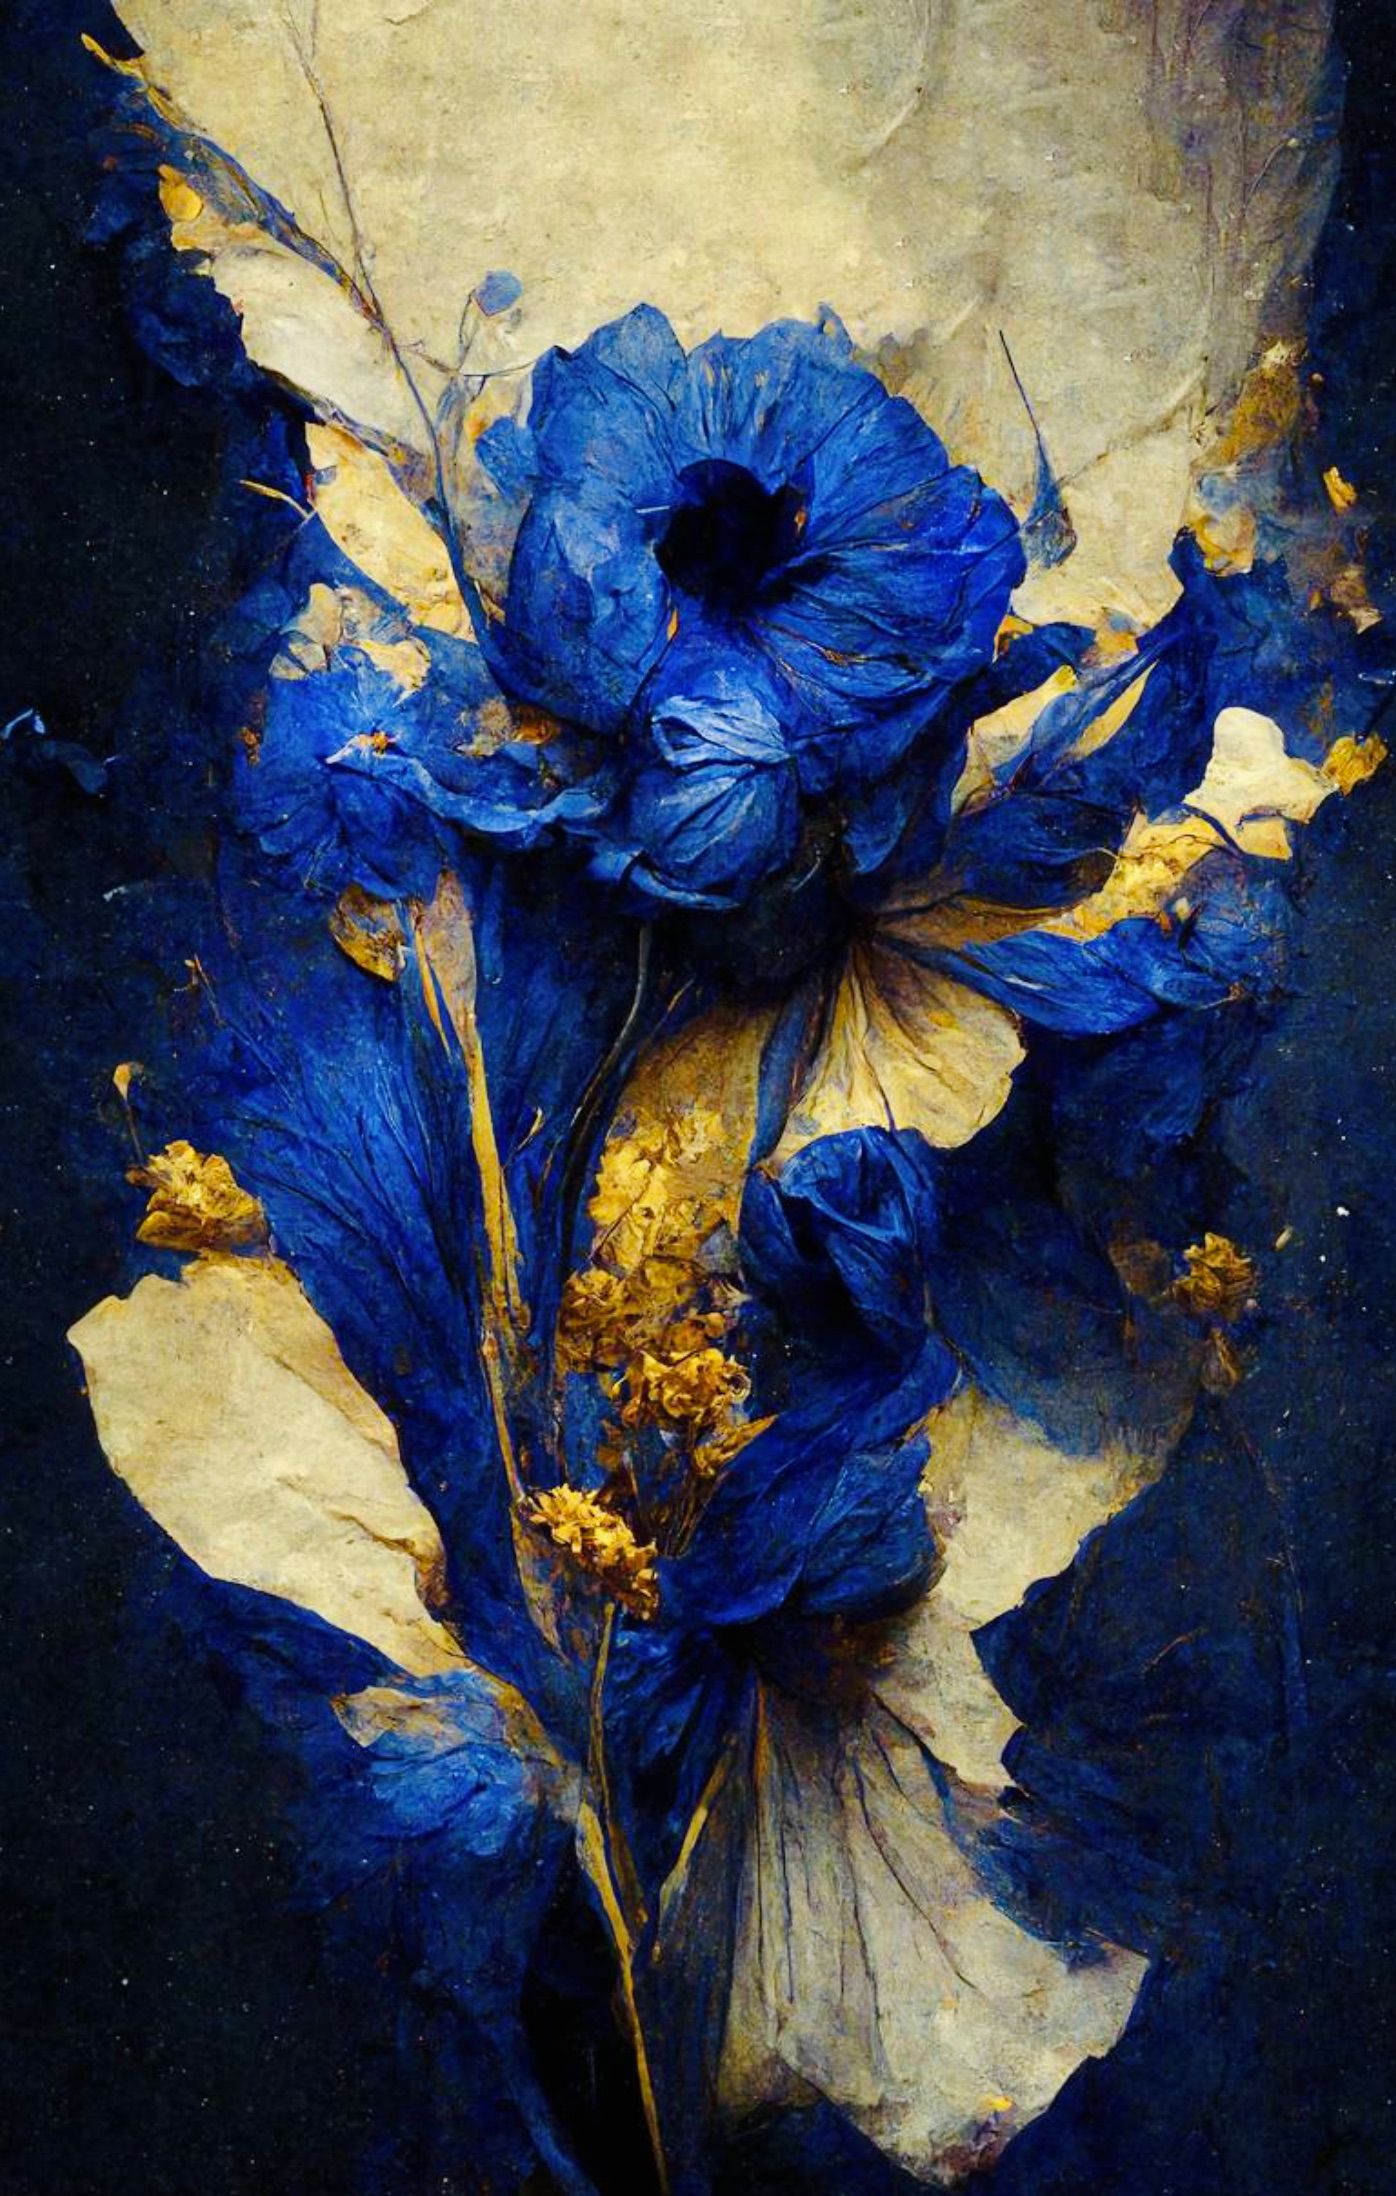 泰斯-阿尔贝斯画的深蓝色精致花朵与米色背景融为一体